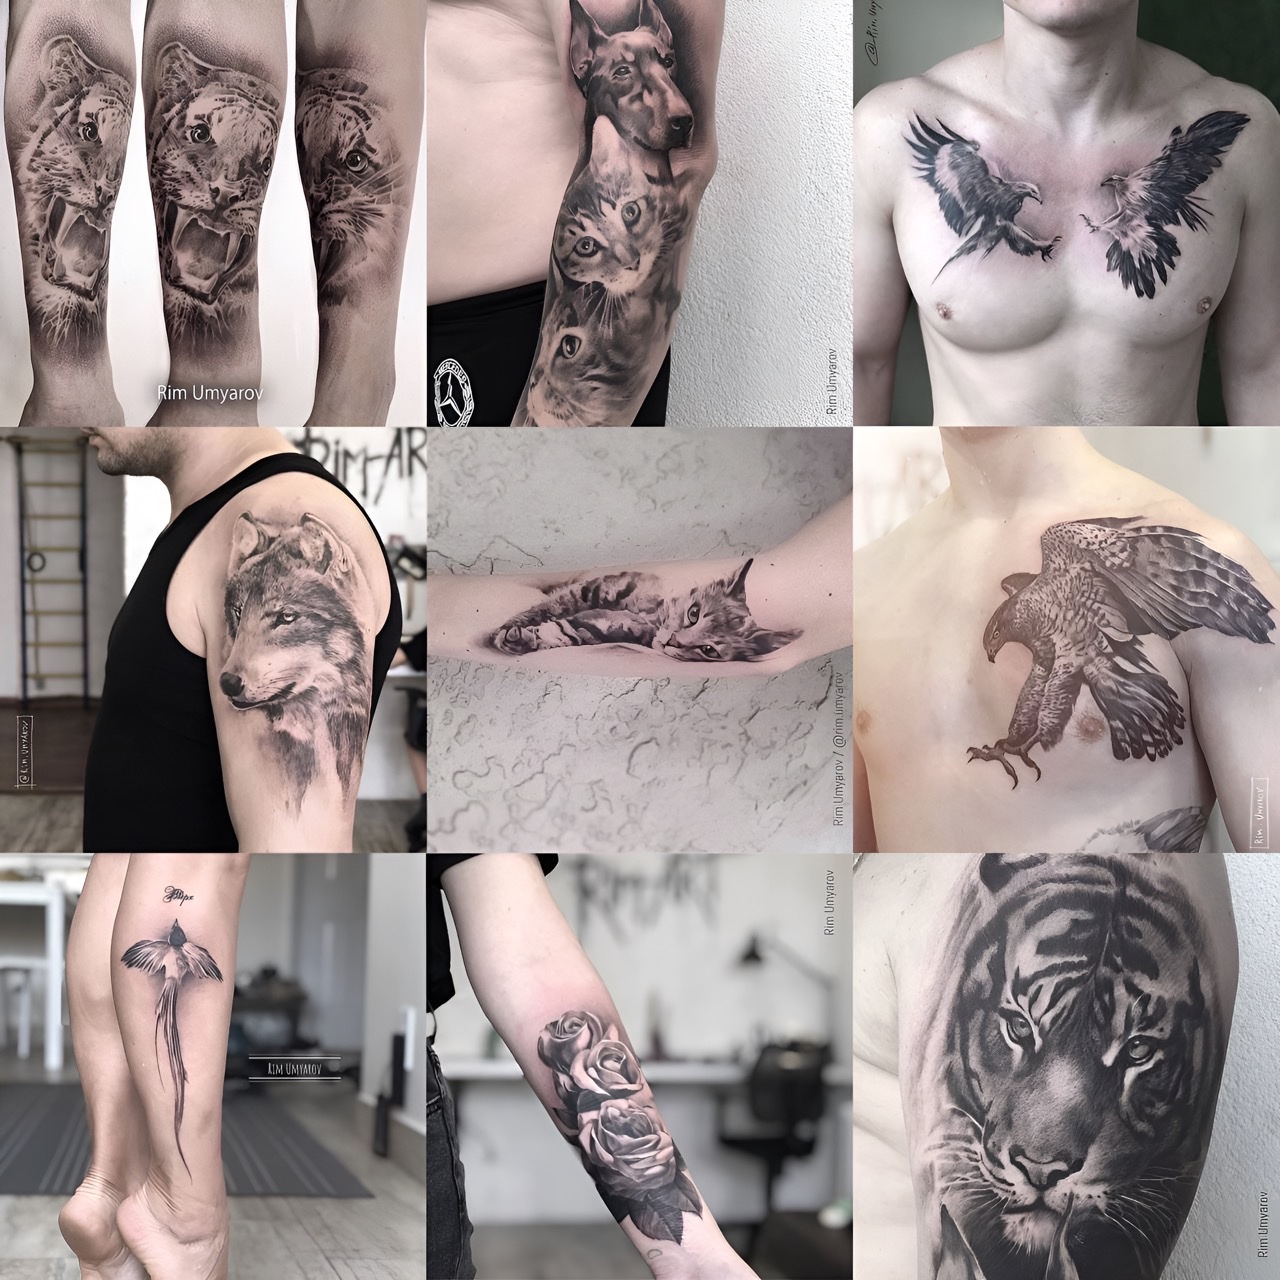 Онлайн курс осознанный татумастер Рим Умяров татуировка Россия обучение